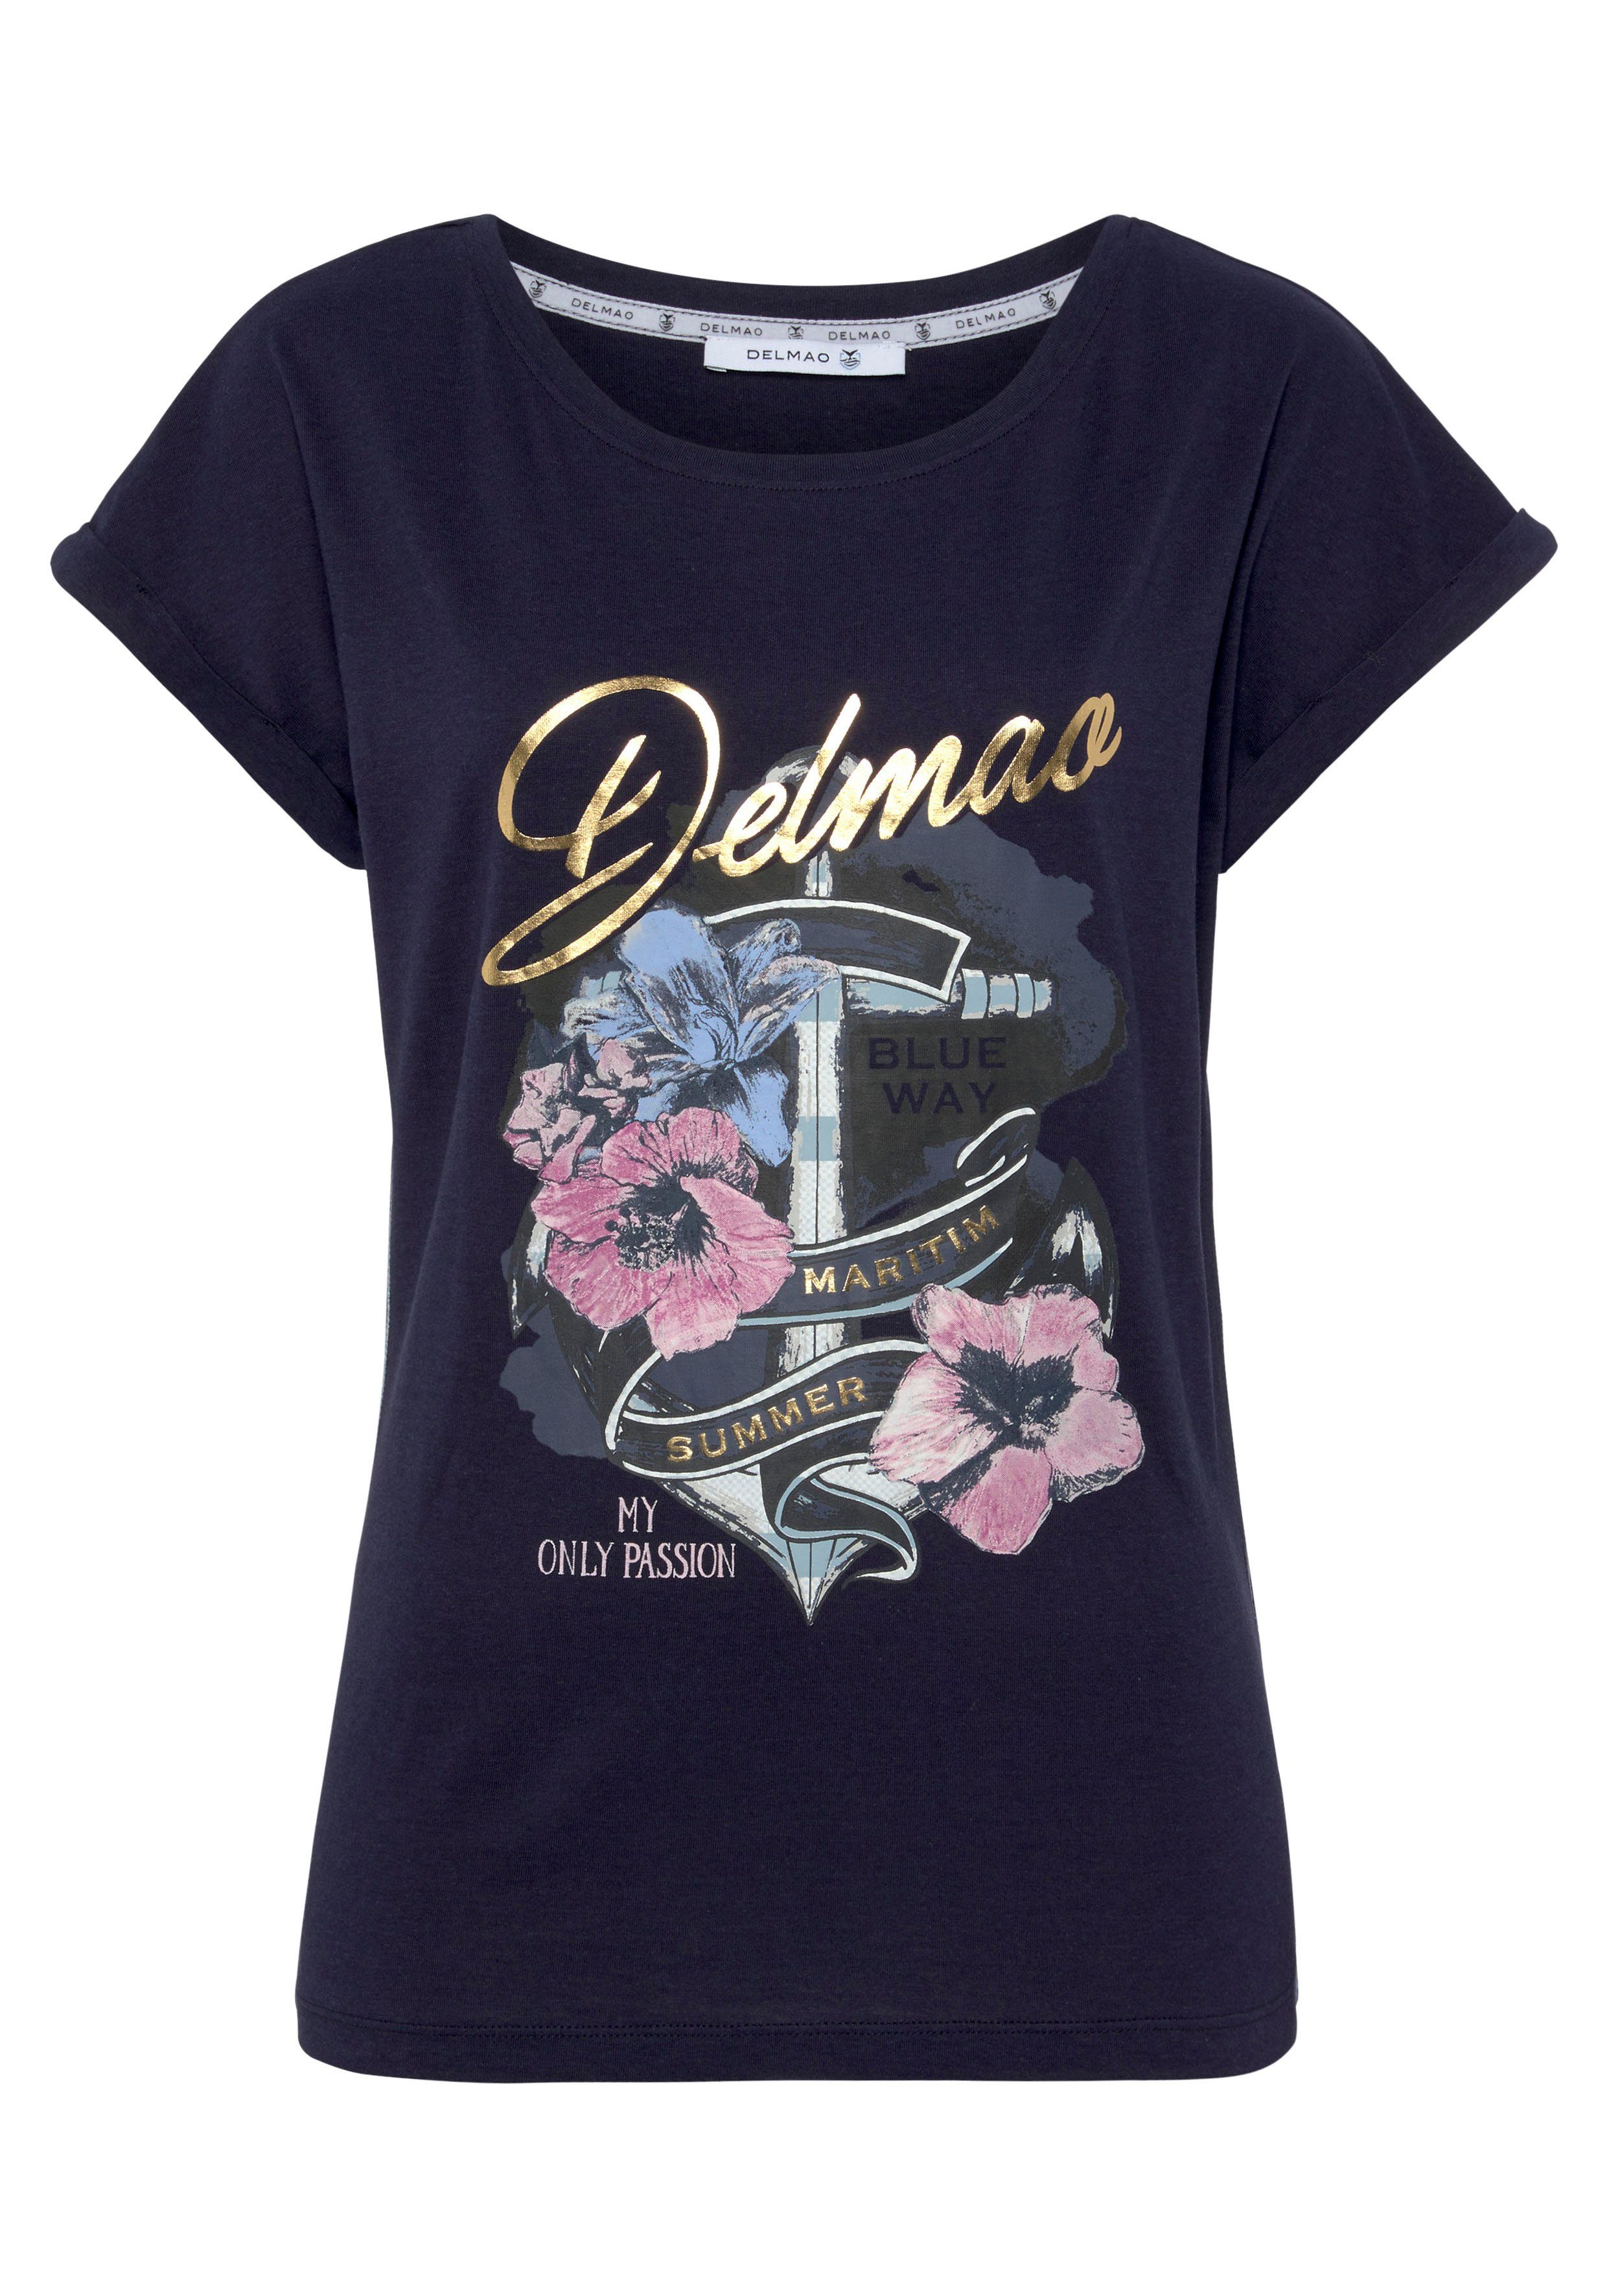 DELMAO Print-Shirt Anker-Logodruck - mit MARKE! NEUE geblümten